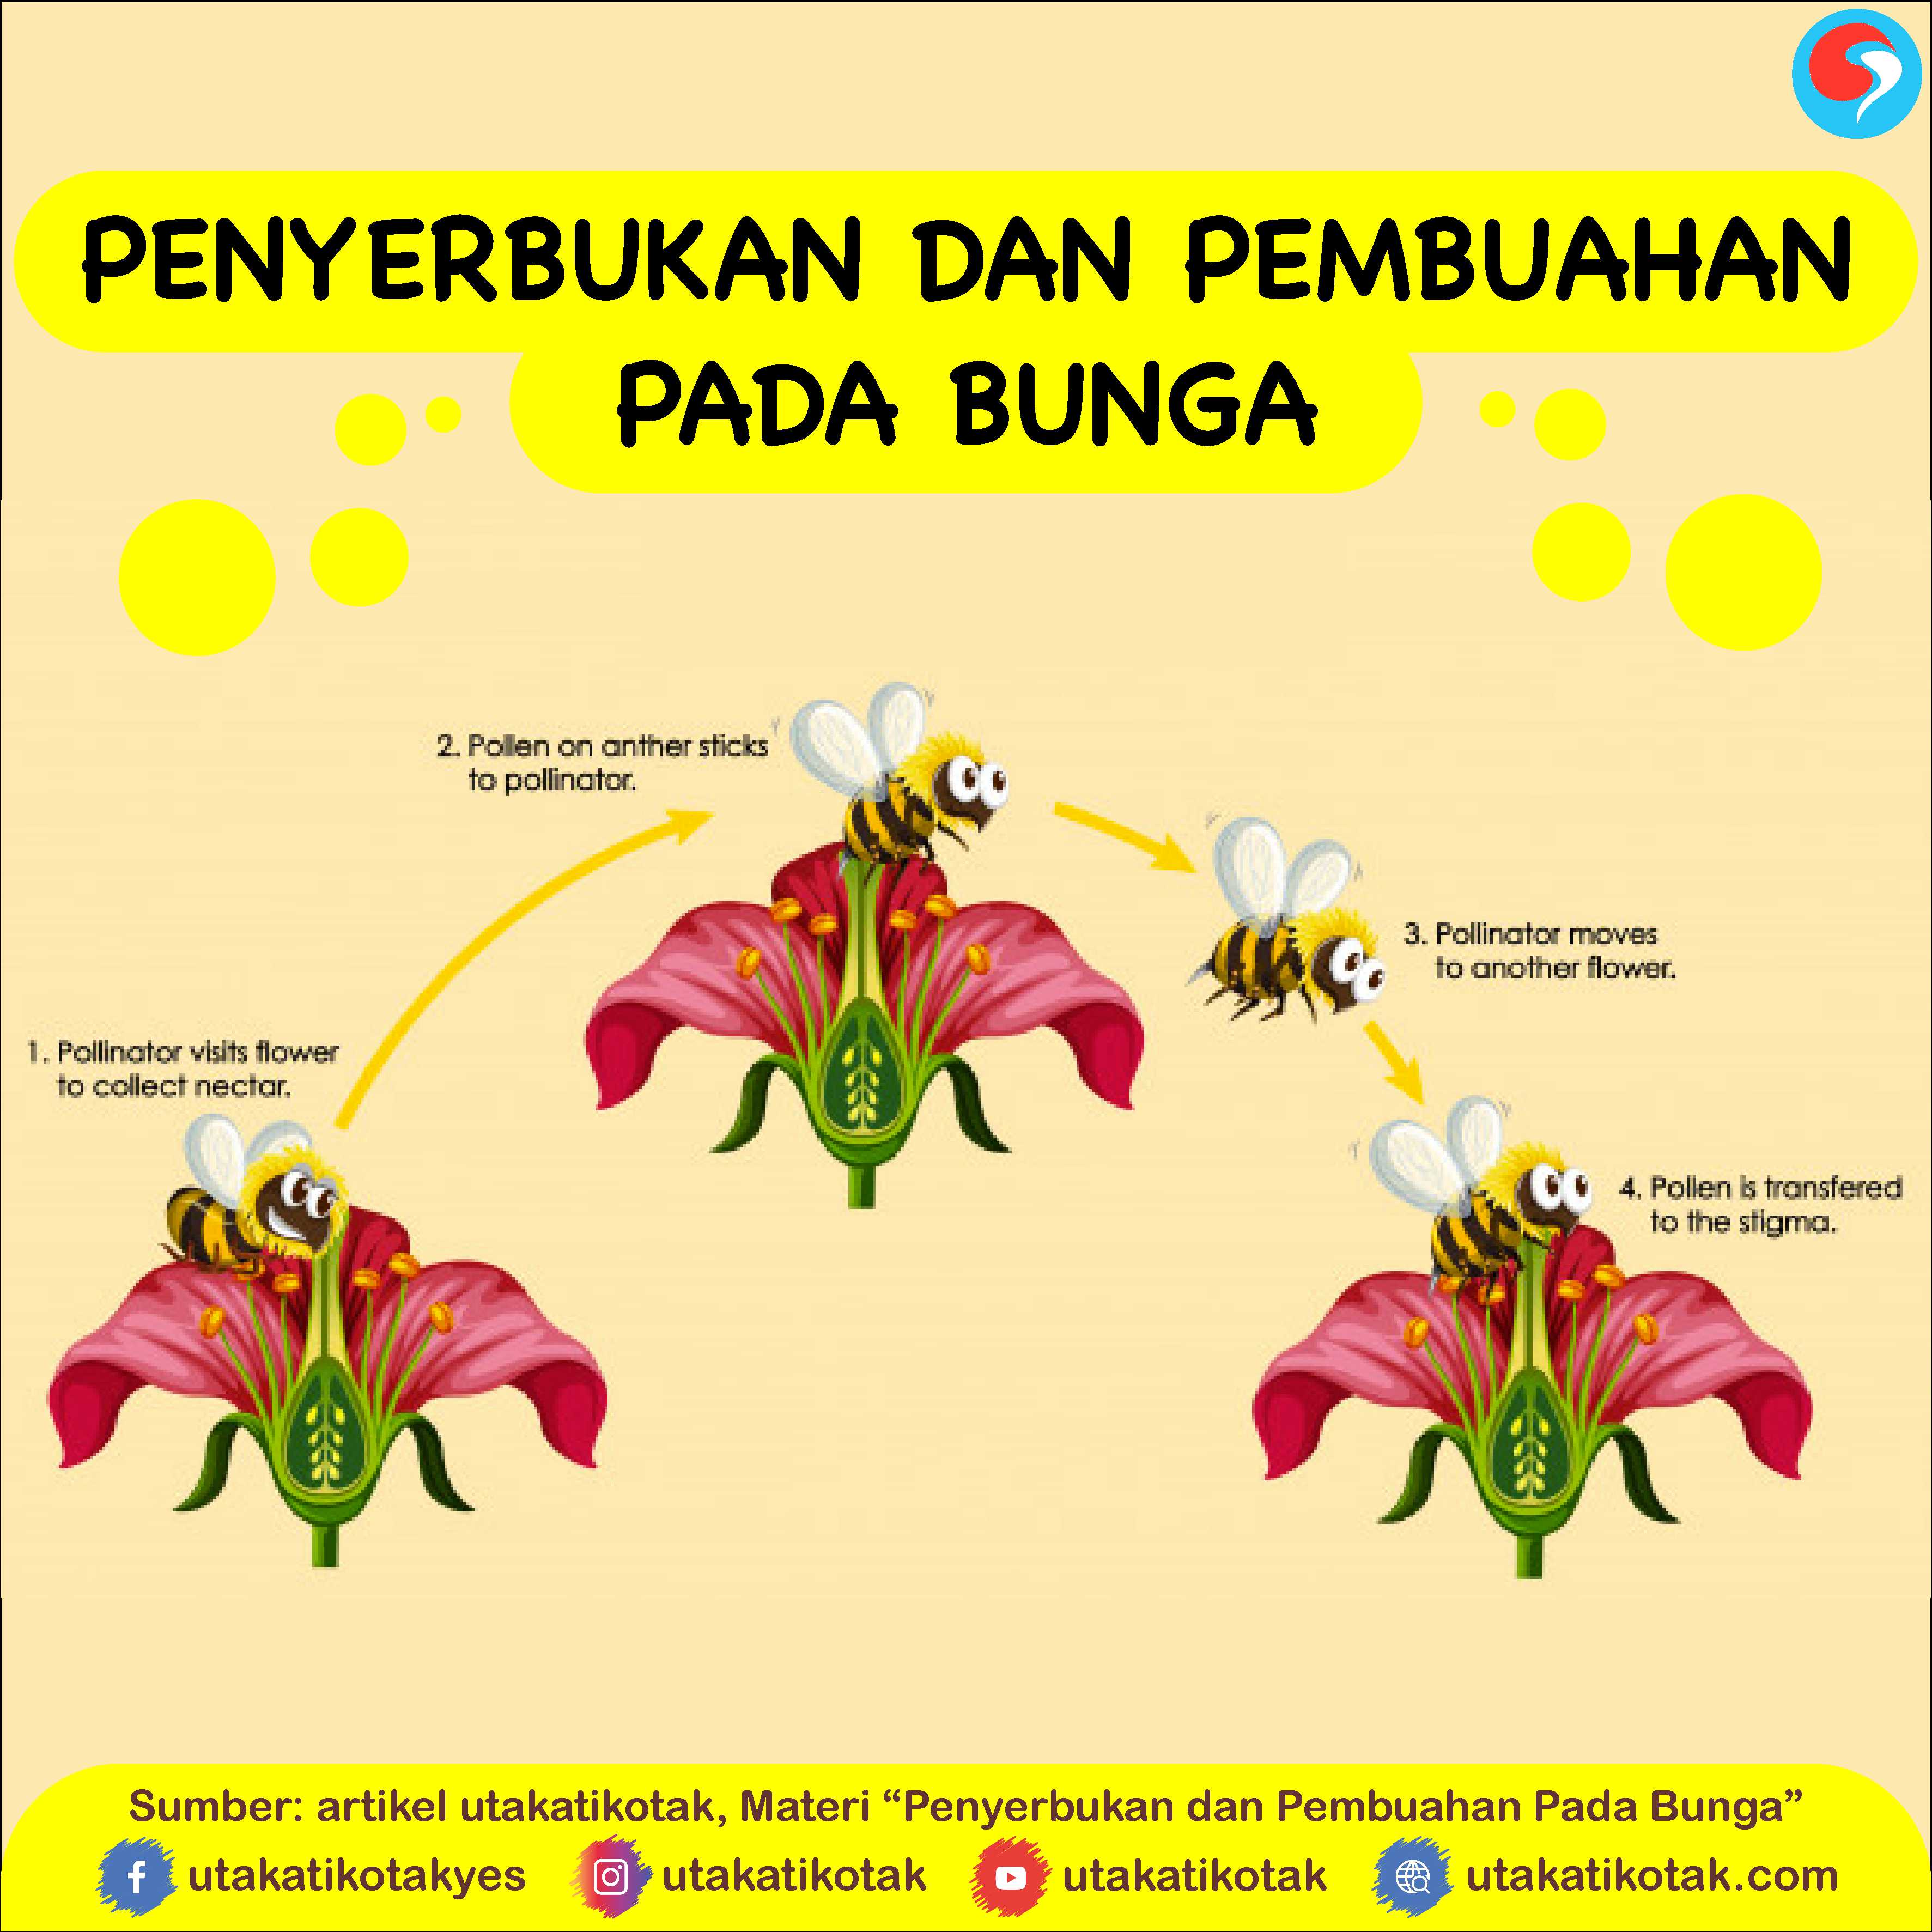 Penyerbukan yang terjadi karena serbuk sari berasal dari bunga lain yang masih satu spesies disebut